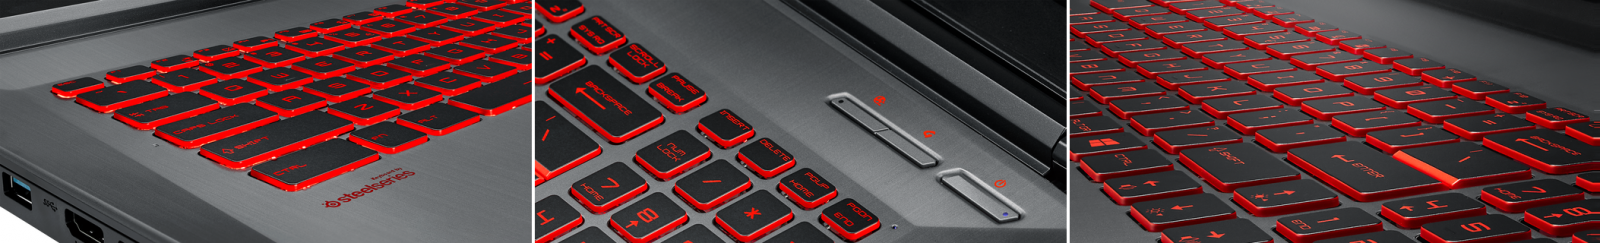 клавиатура с яркой красной подсветкой и функциональными клавишами